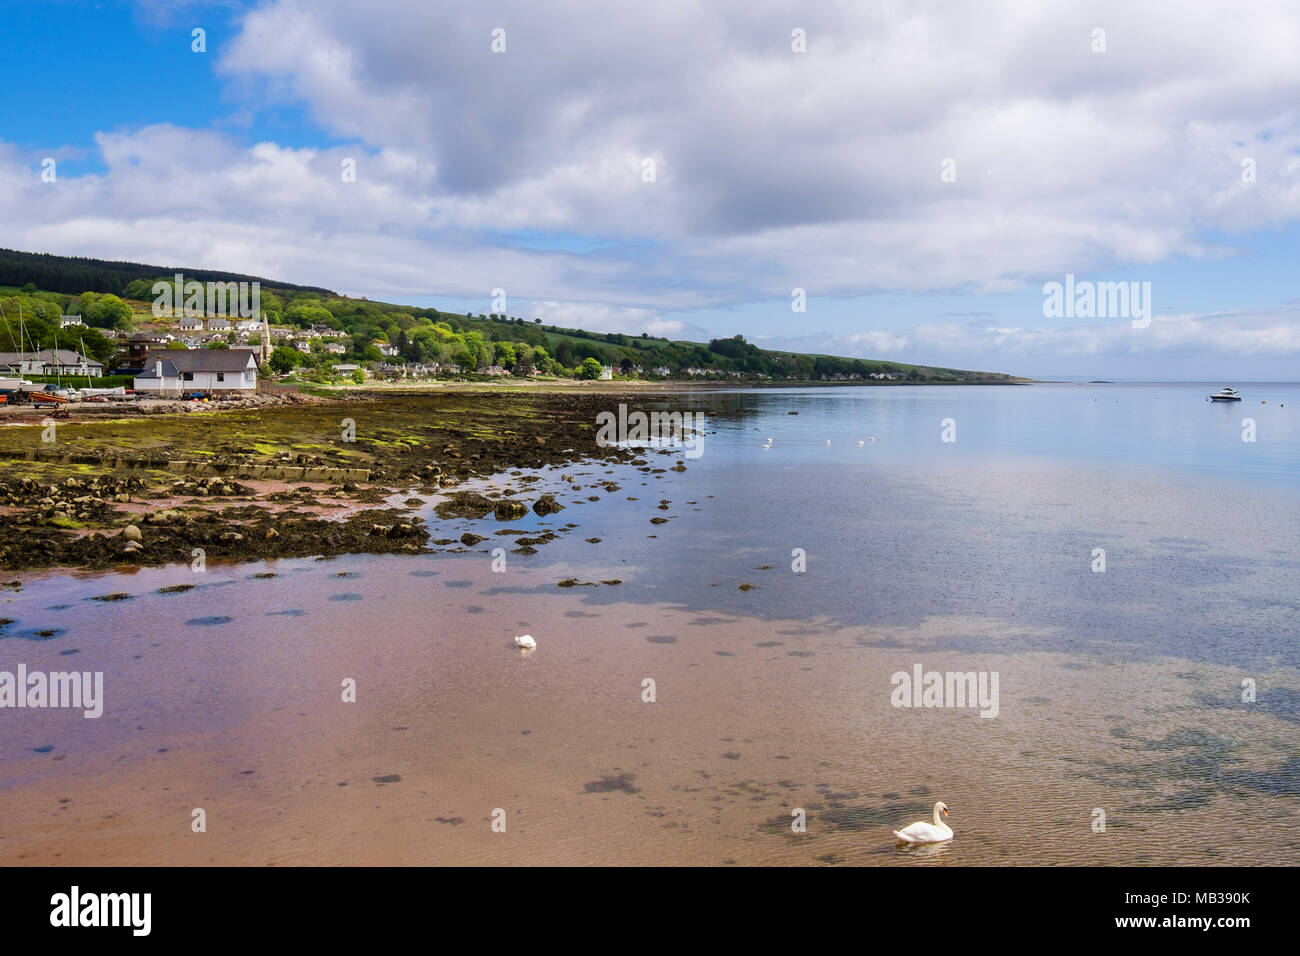 Lamlash Bay Keine nehmen Zone (NTZ) Maerl Betten und Regeneration der Unterwasserwelt zu schützen. Lamlash, Isle of Arran, Schottland, Großbritannien, Großbritannien Stockfoto